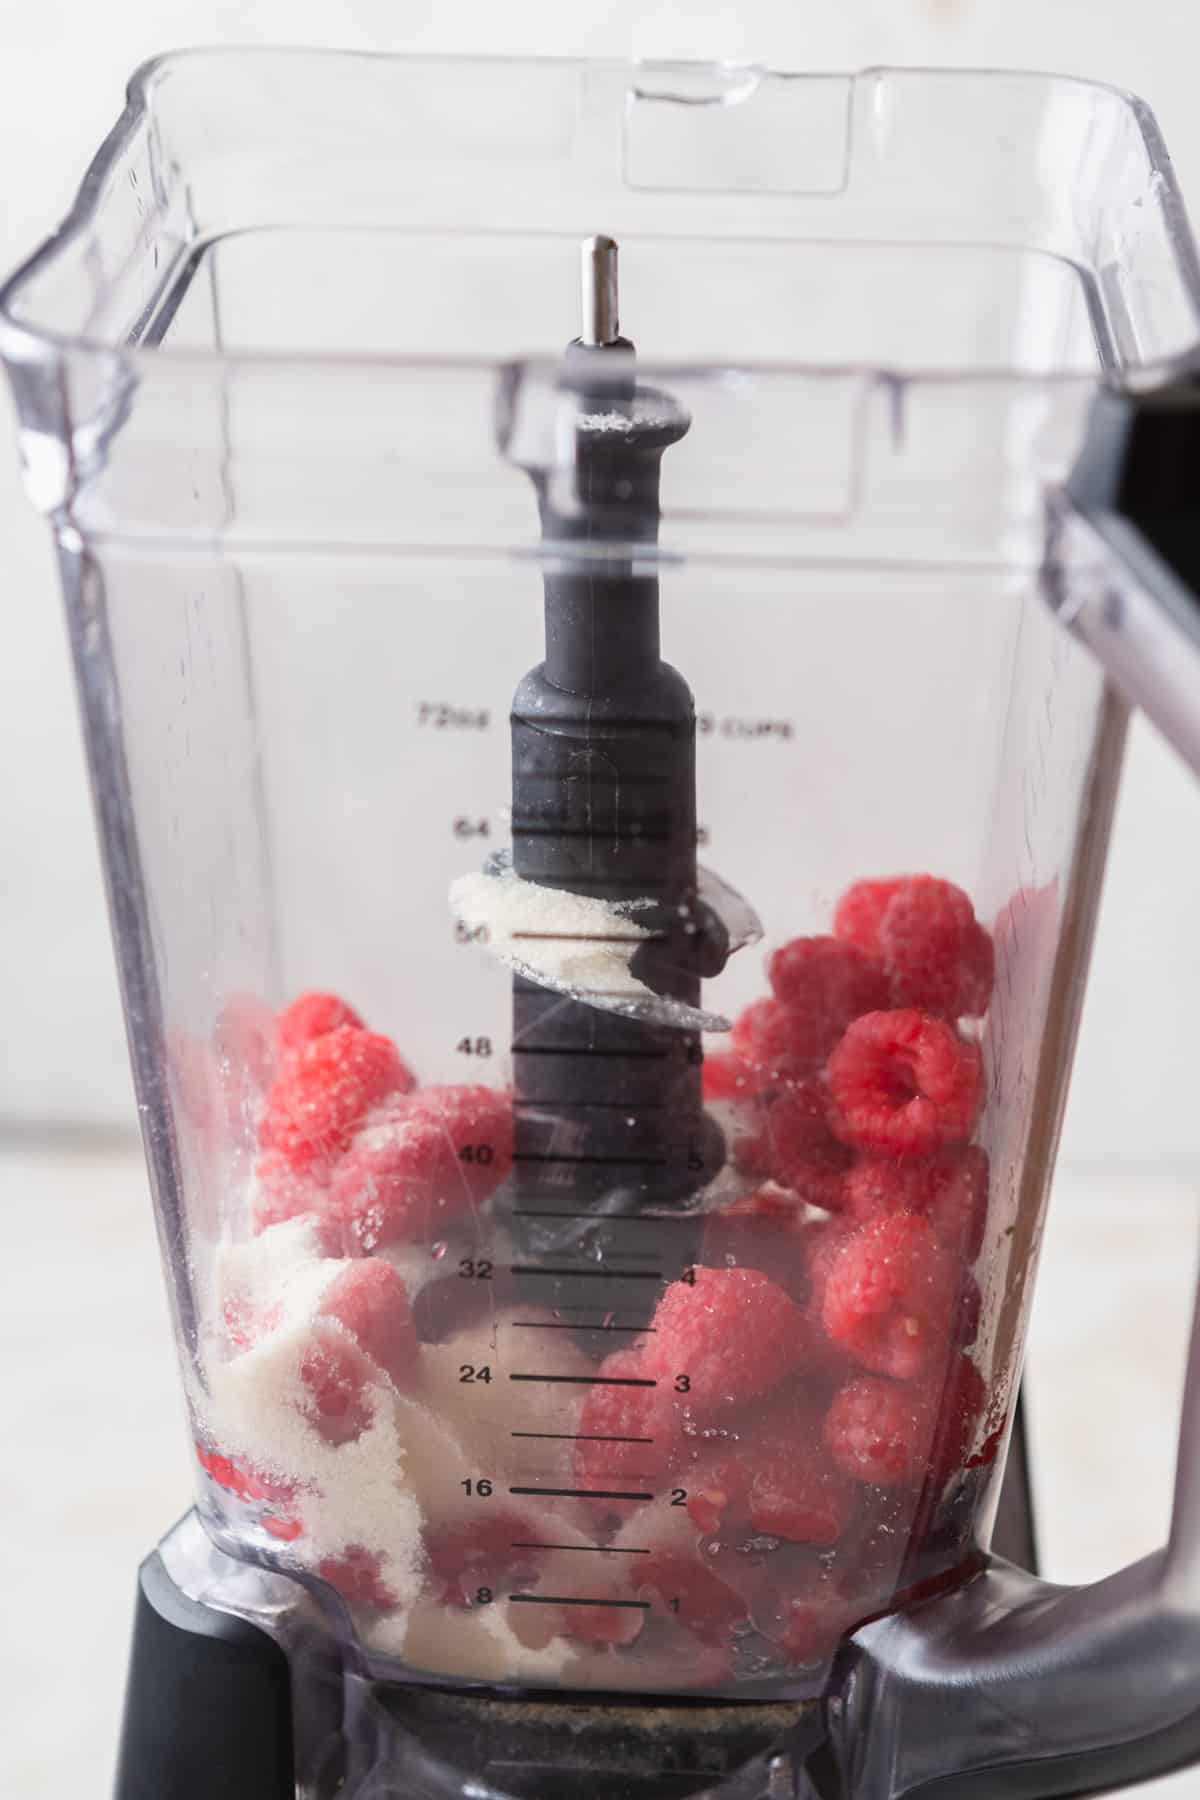 Raspberries, sugar, and lemon juice in a blender.